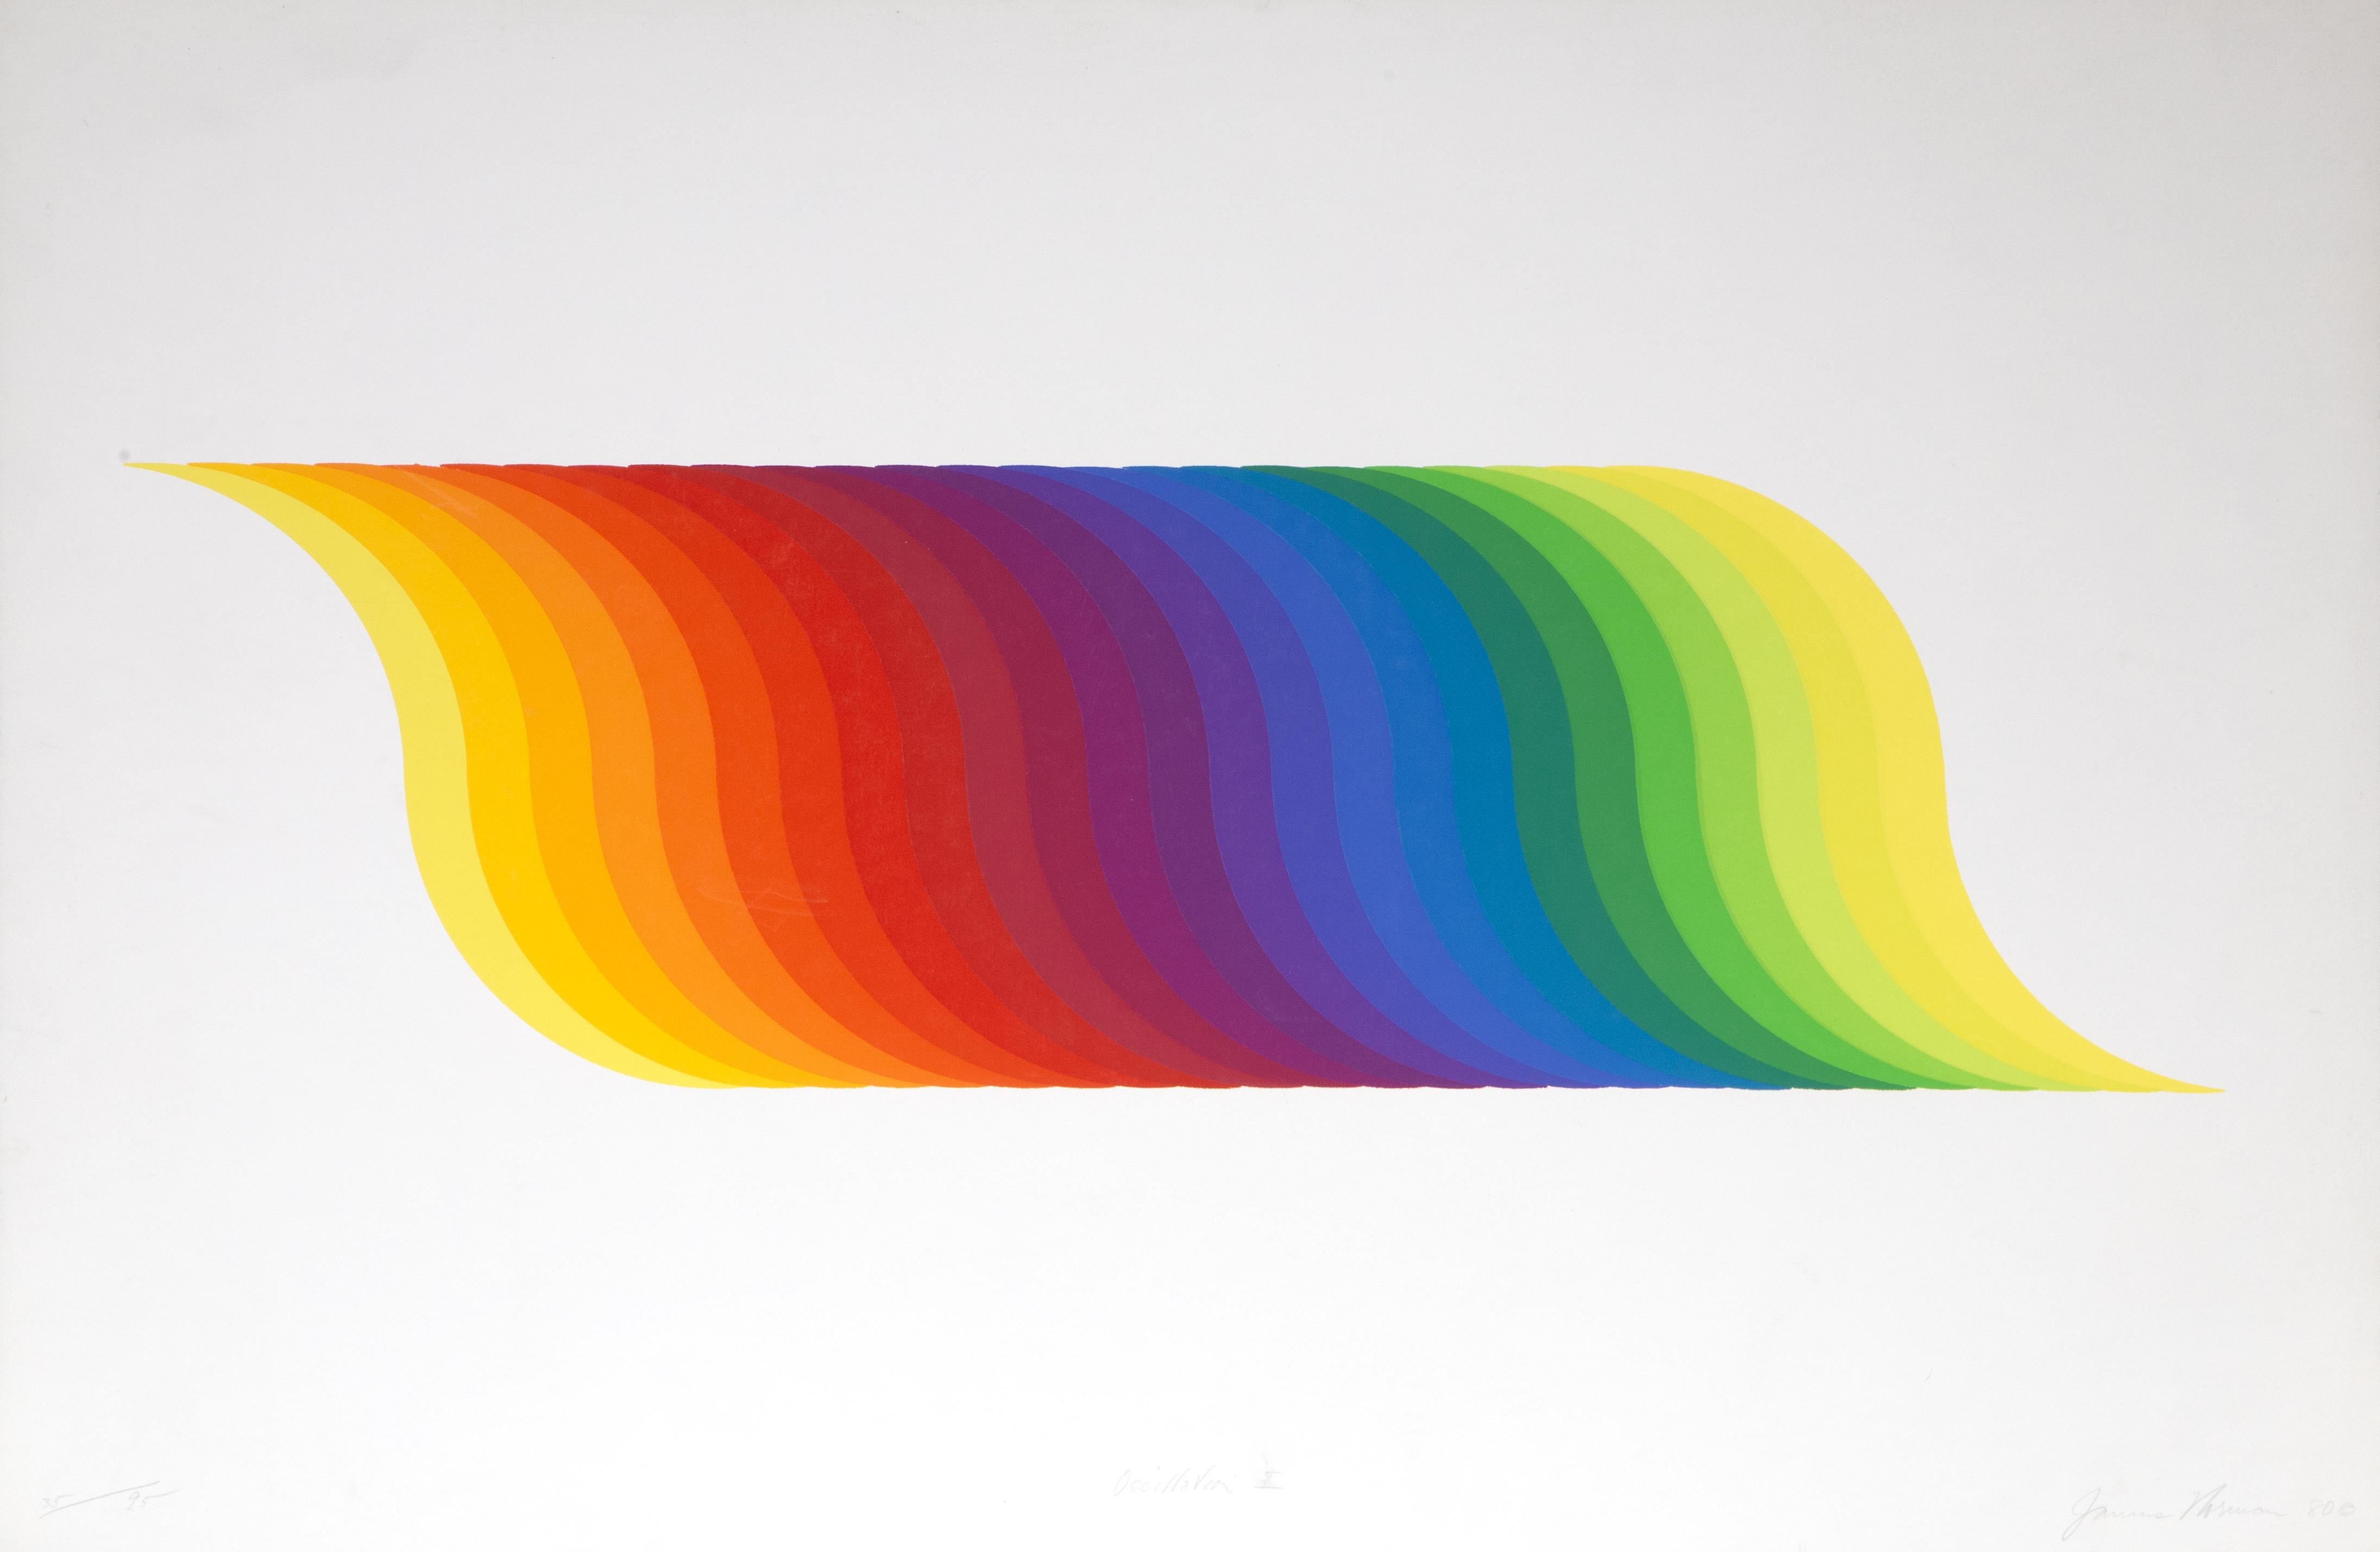 Künstler: James Norman, Amerikaner (1927 - 2011)
Titel: Oszillation I
Jahr: 1980
Medium: Siebdruck, signiert und nummeriert mit Bleistift
Auflage: 35/95
Bildgröße: 10 x 33 Zoll
Größe: 25 x 38 Zoll (63,5 x 96,52 cm)